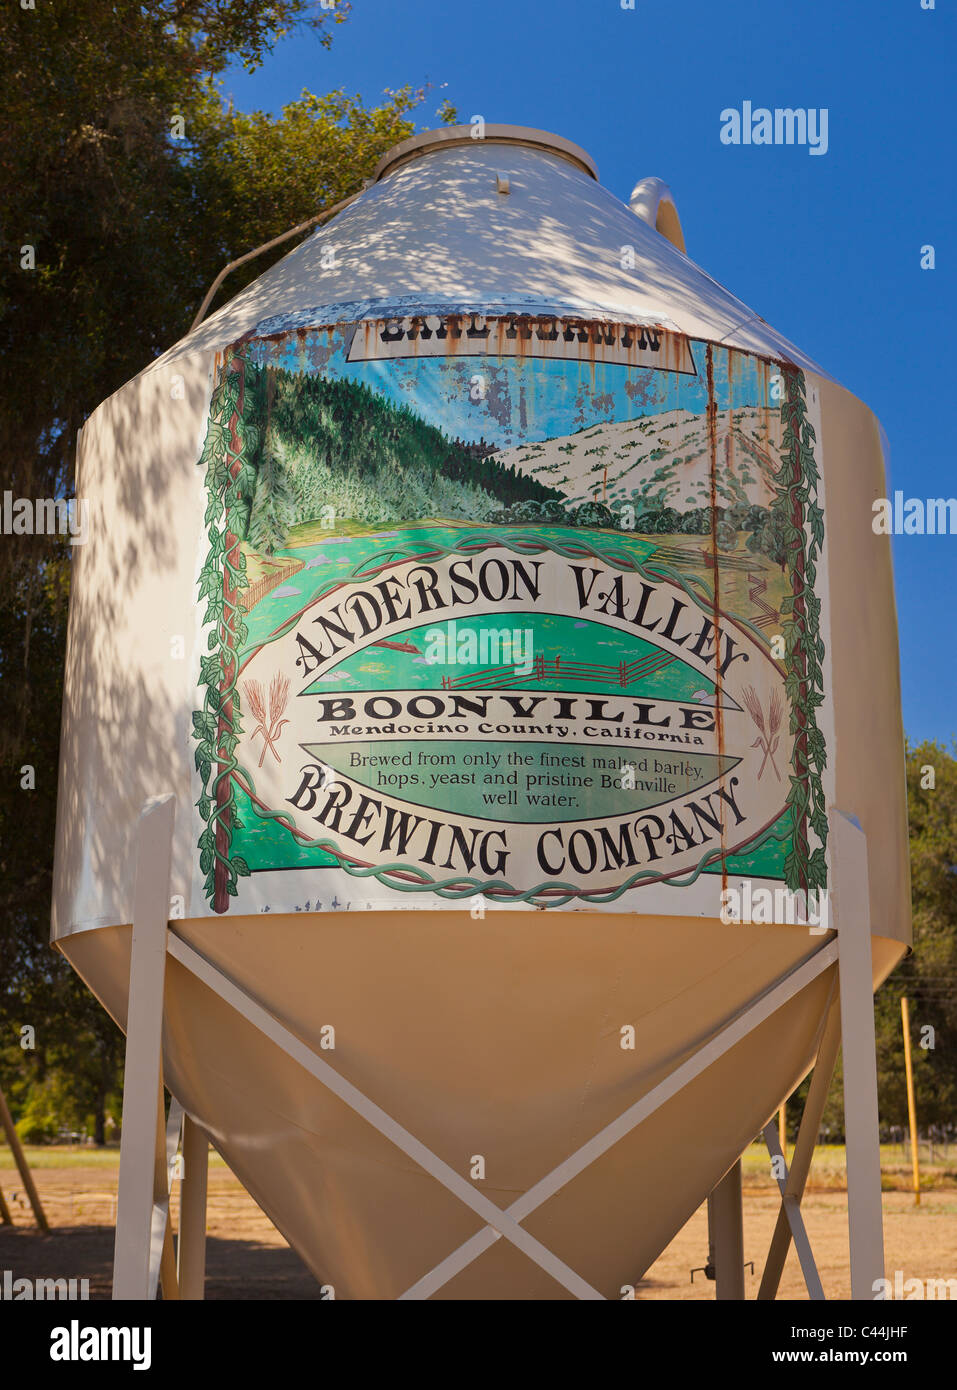 BOONVILLE, CALIFORNIA, STATI UNITI D'AMERICA - Anderson Valley Brewing Company, segno sul vecchio serbatoio di fermentazione, in Mendocino County. Foto Stock